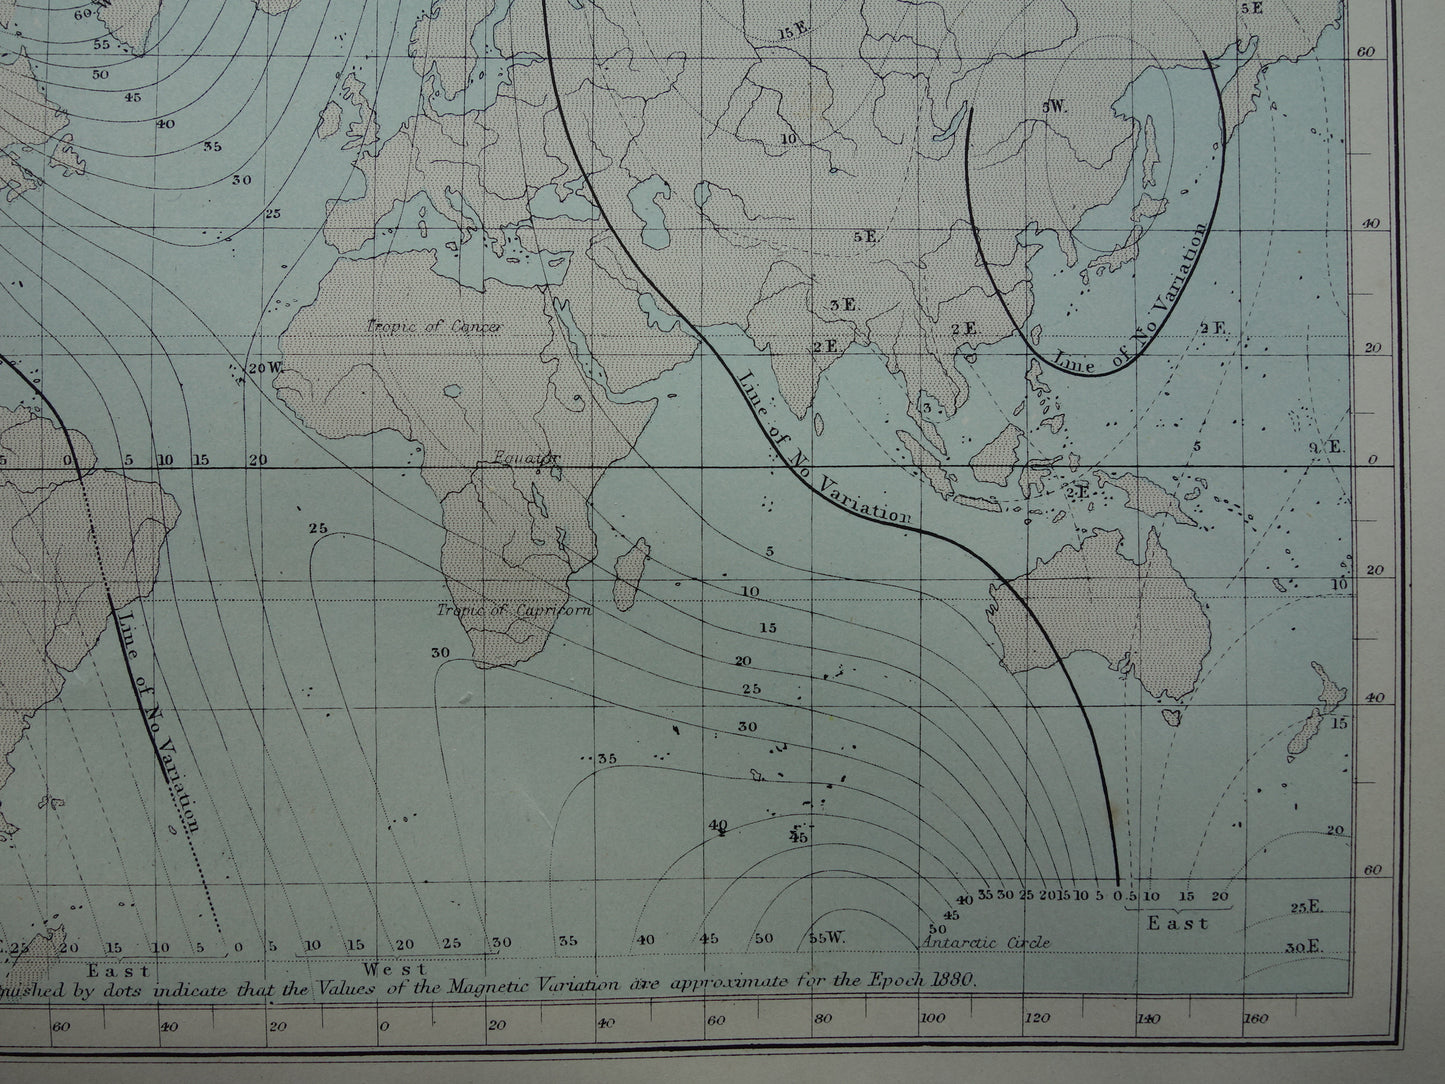 WERELDKAART oude kaart van de wereld met getijden en aardmagnetisch veld originele antieke kaart over magnetisme eb en vloed cotidale lijnen